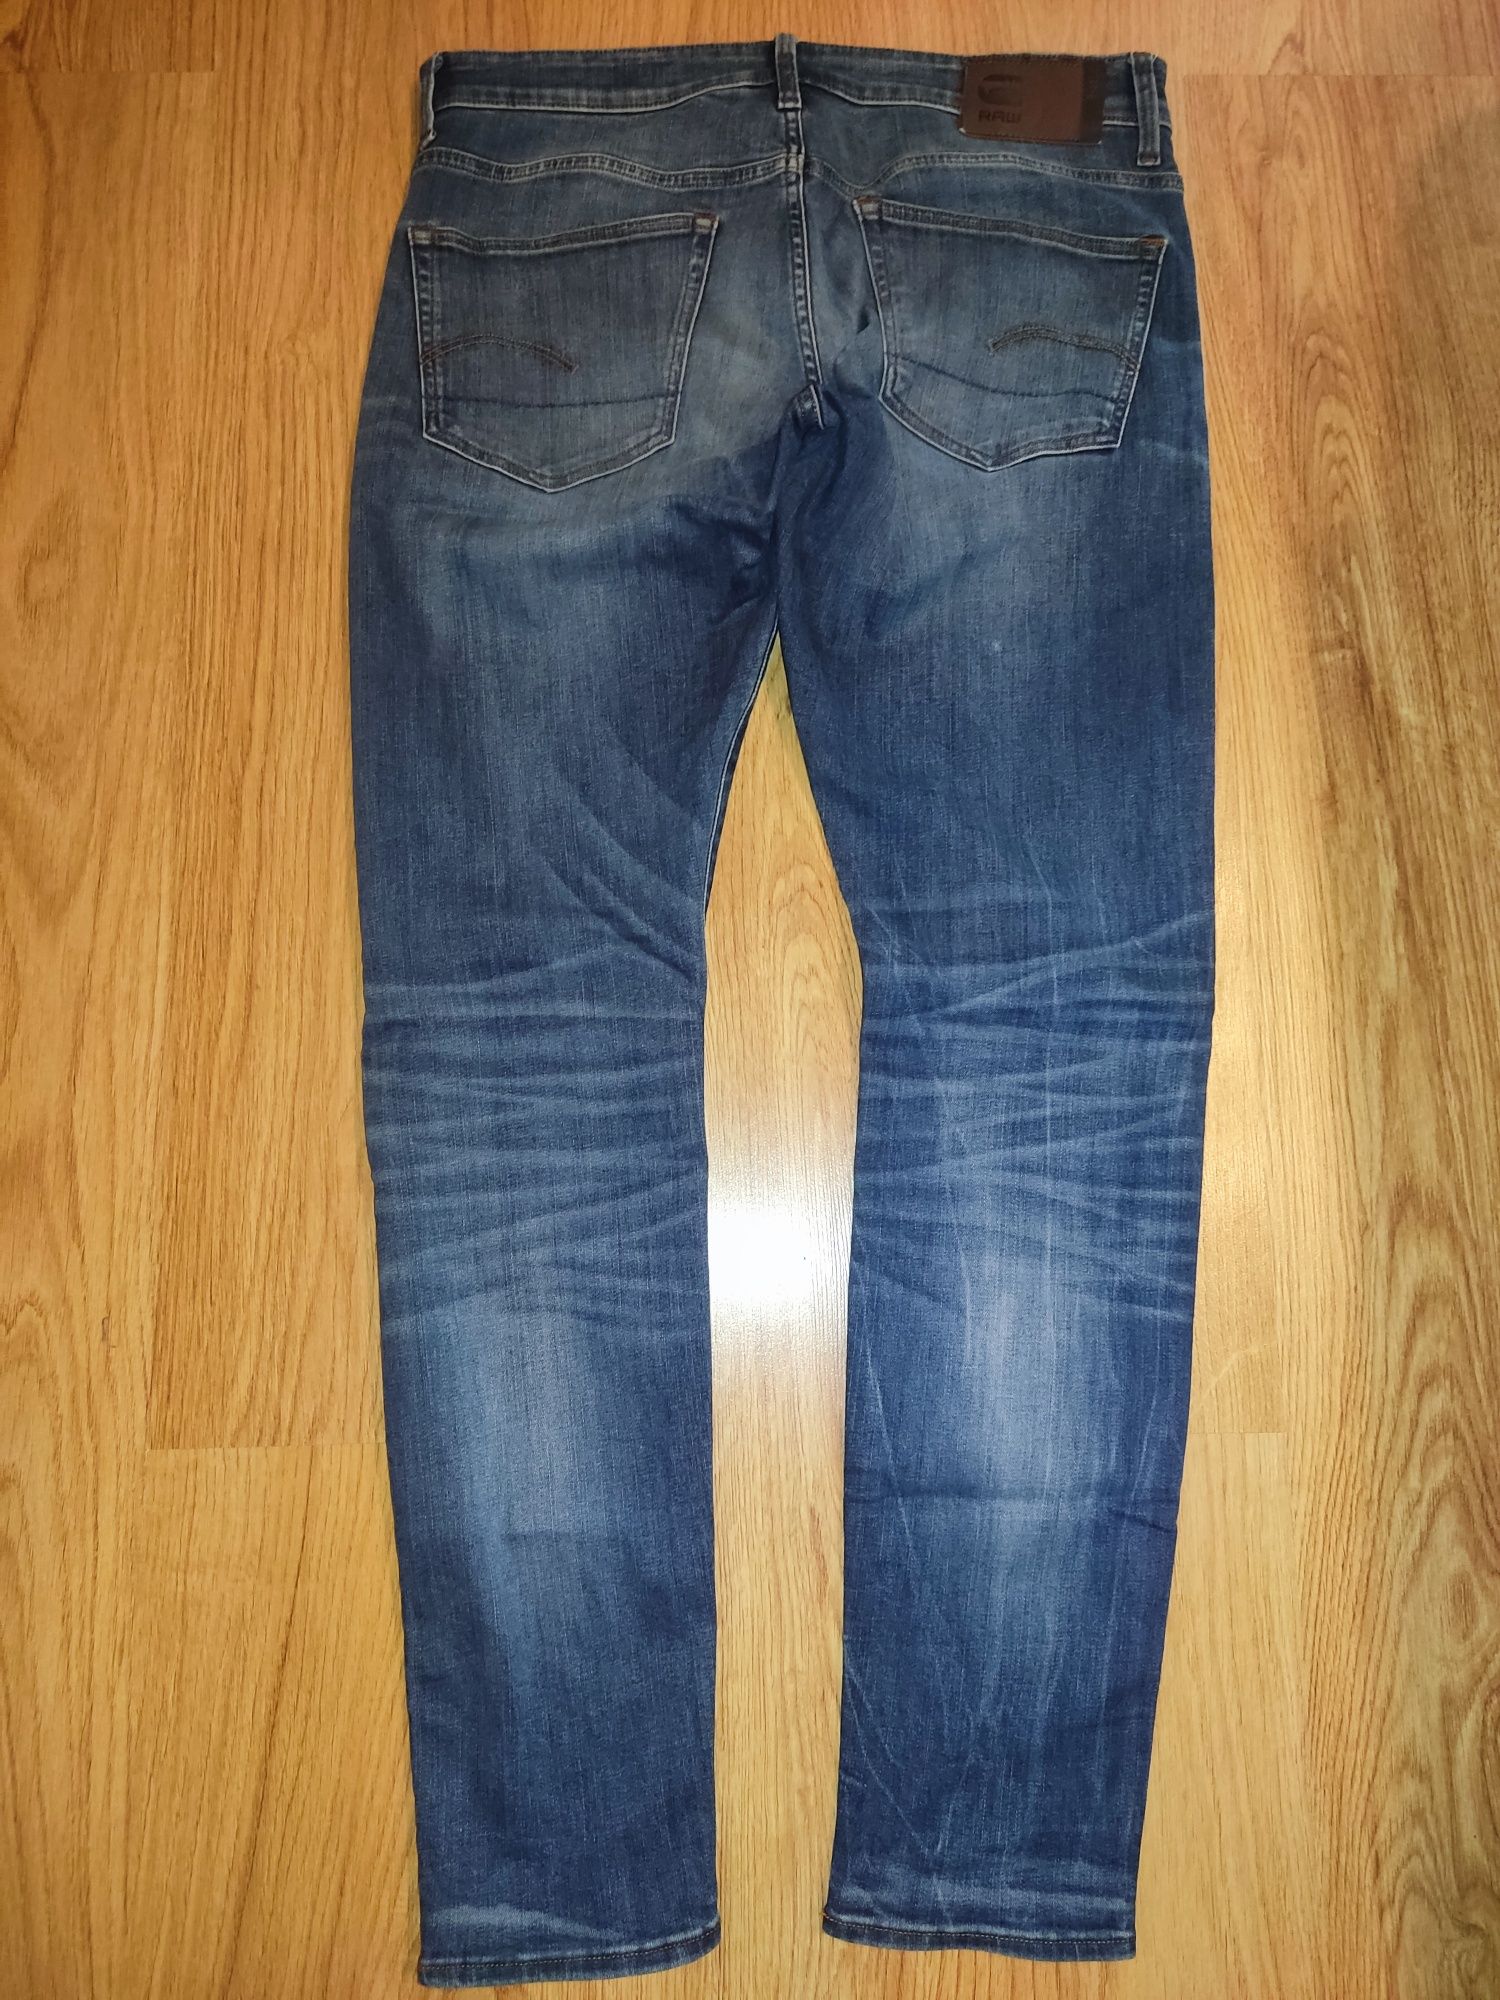 Spodnie G-star 33/32 Jeans